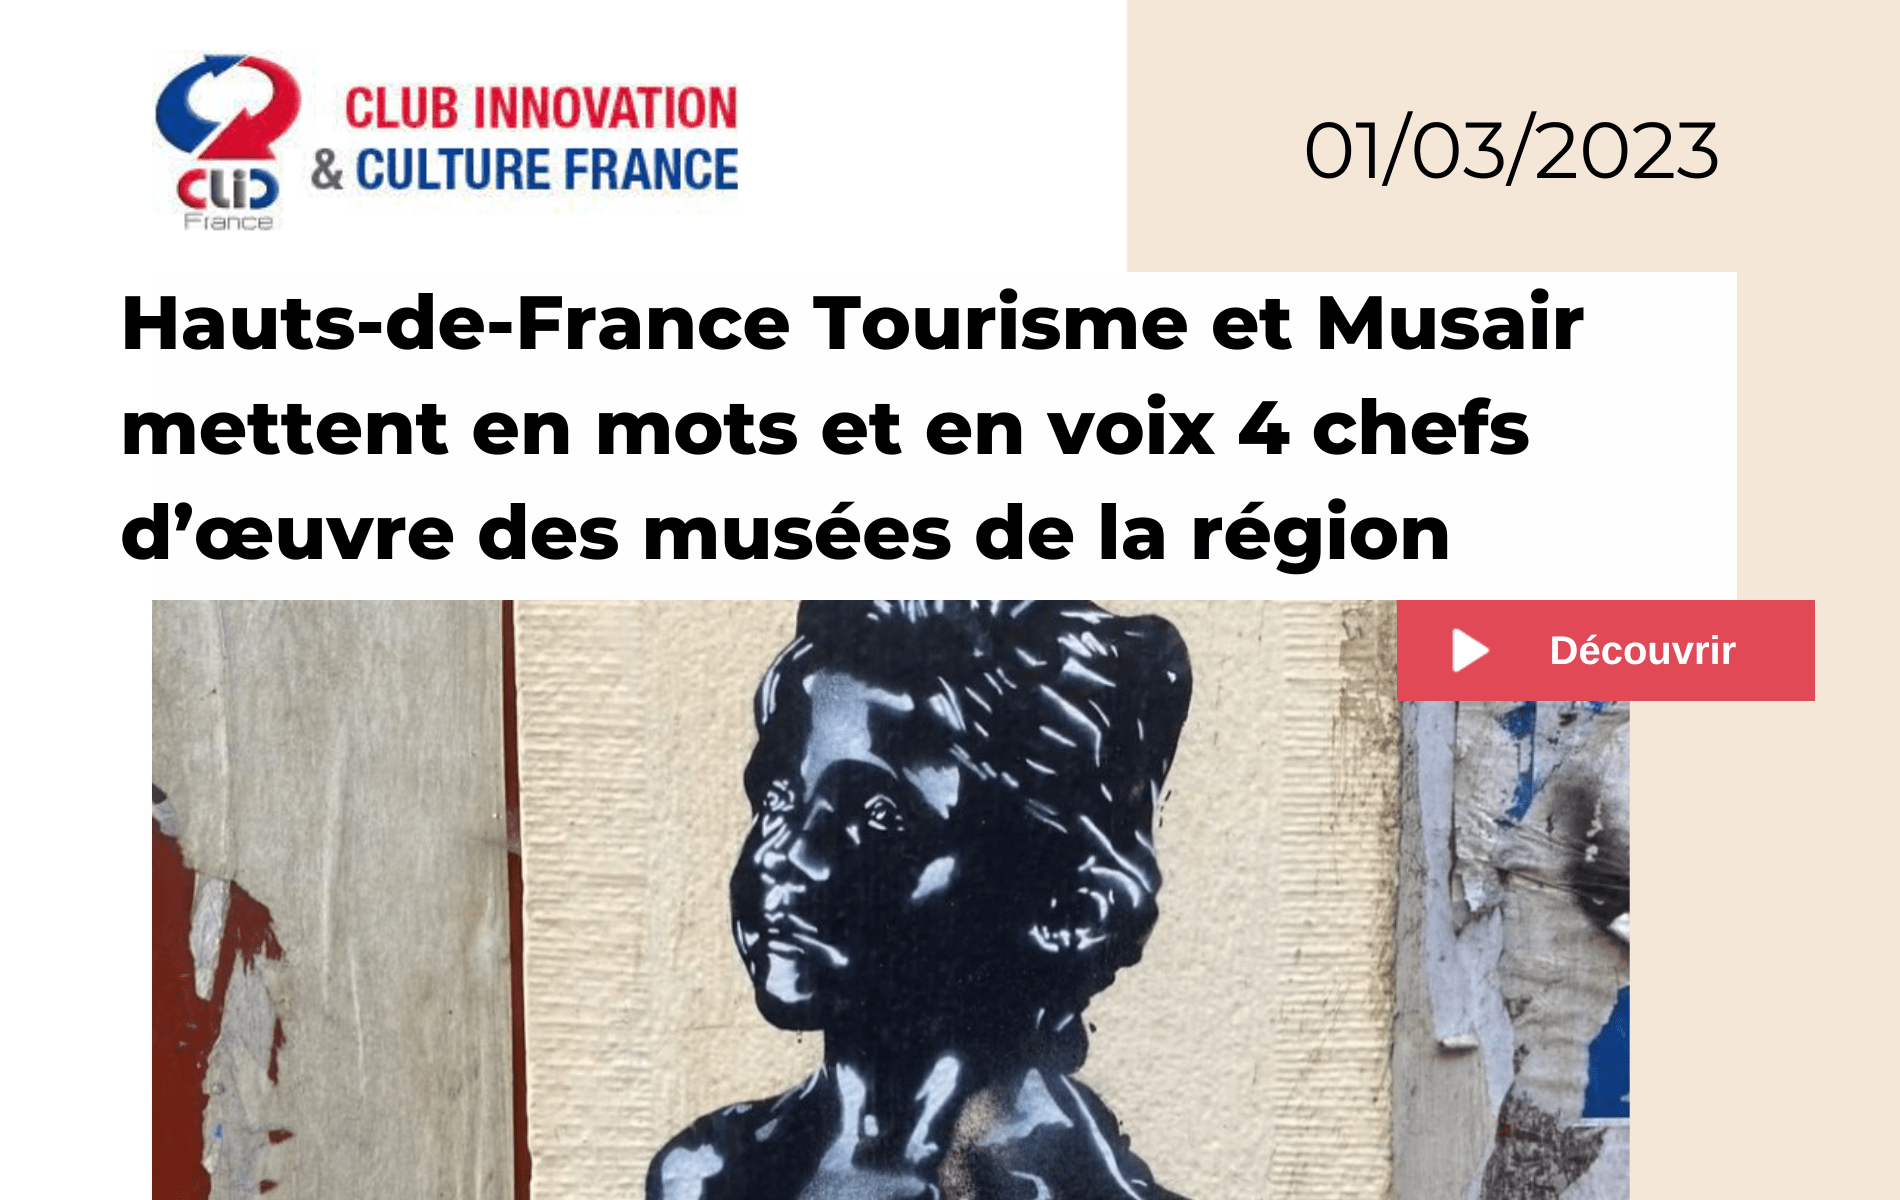 Article Cub innovation et culture pour Musair et Hauts-de-France Tourisme